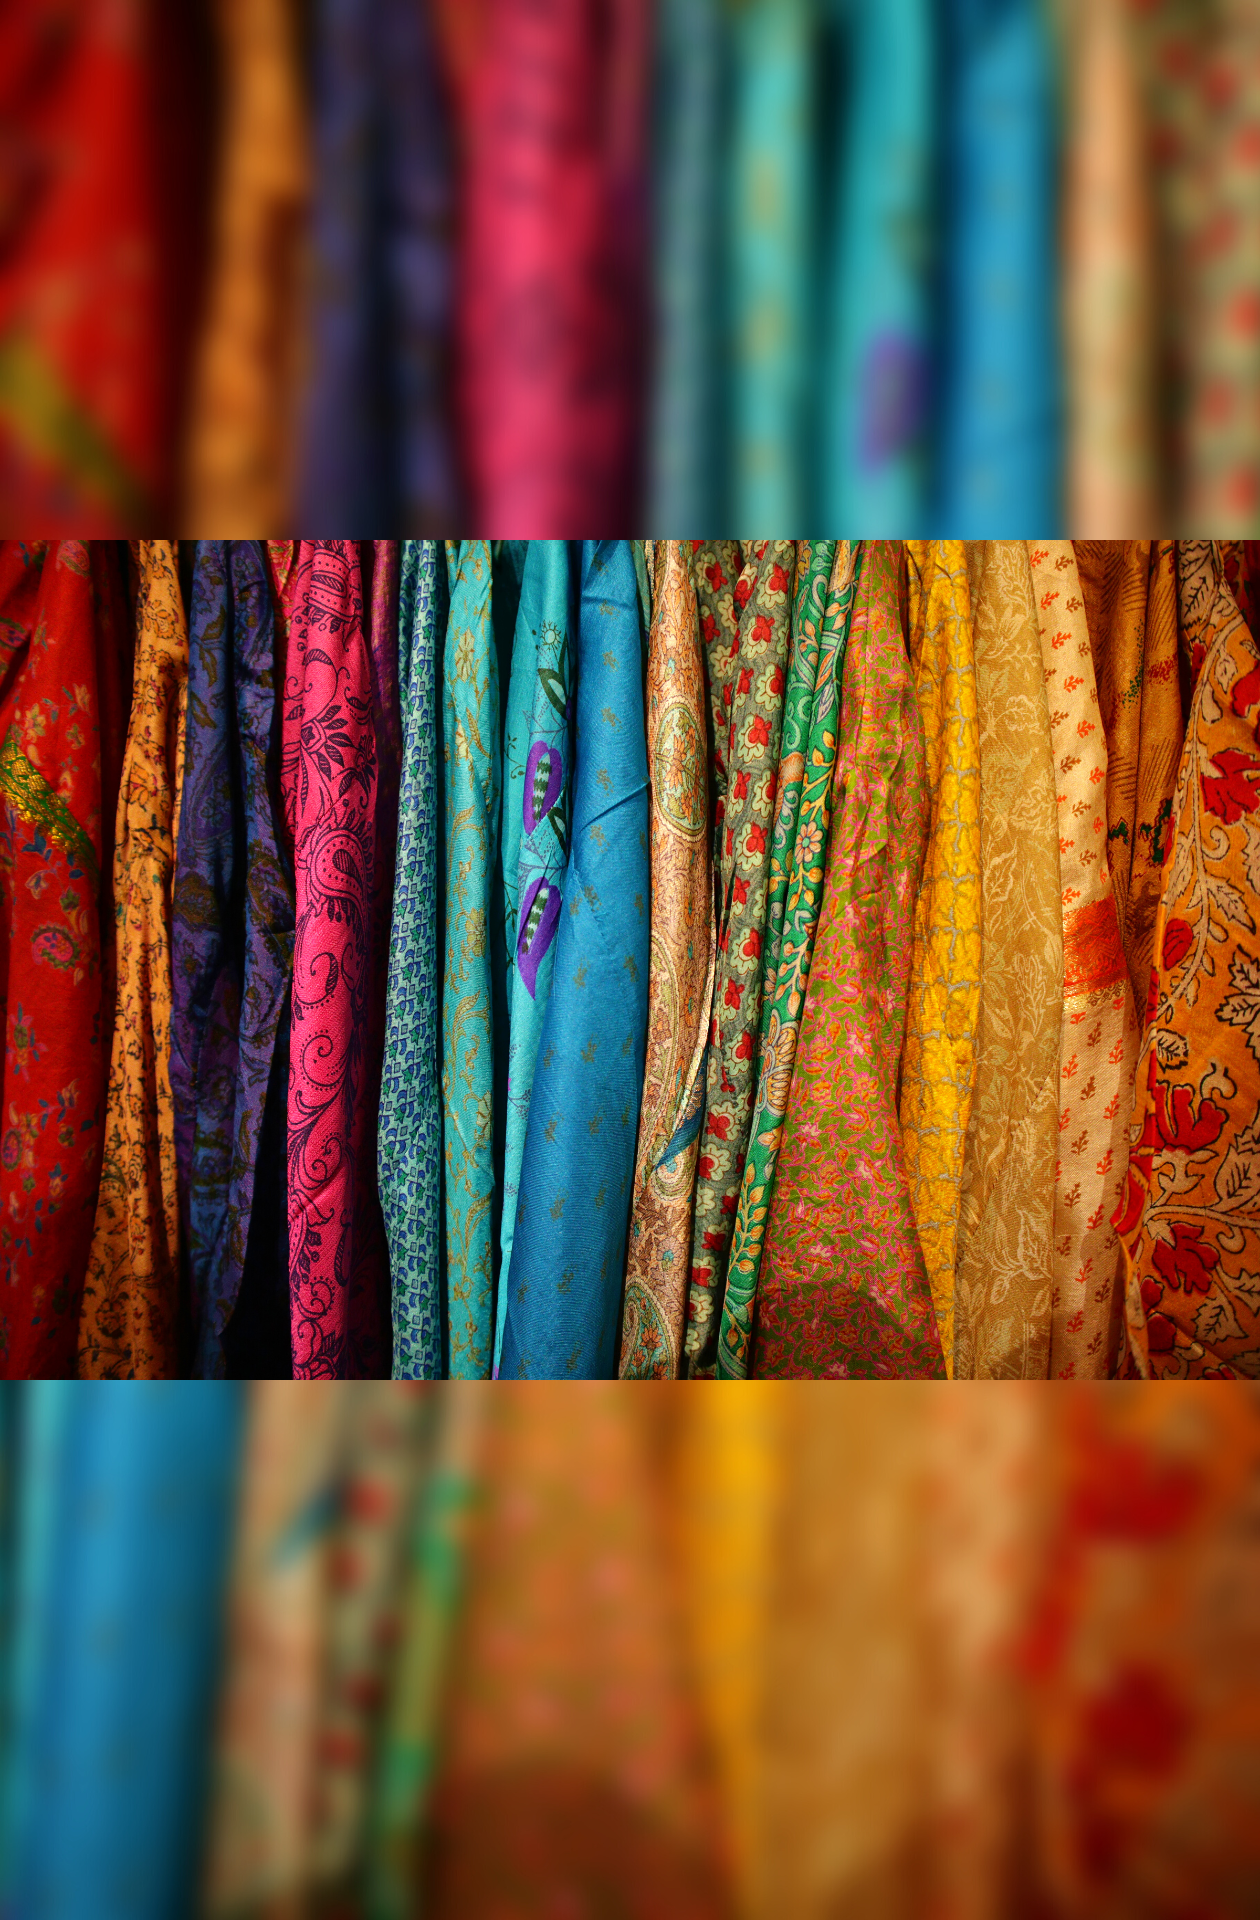 The Muse Jacket vintage sari silk. 100% silk. ON SALE